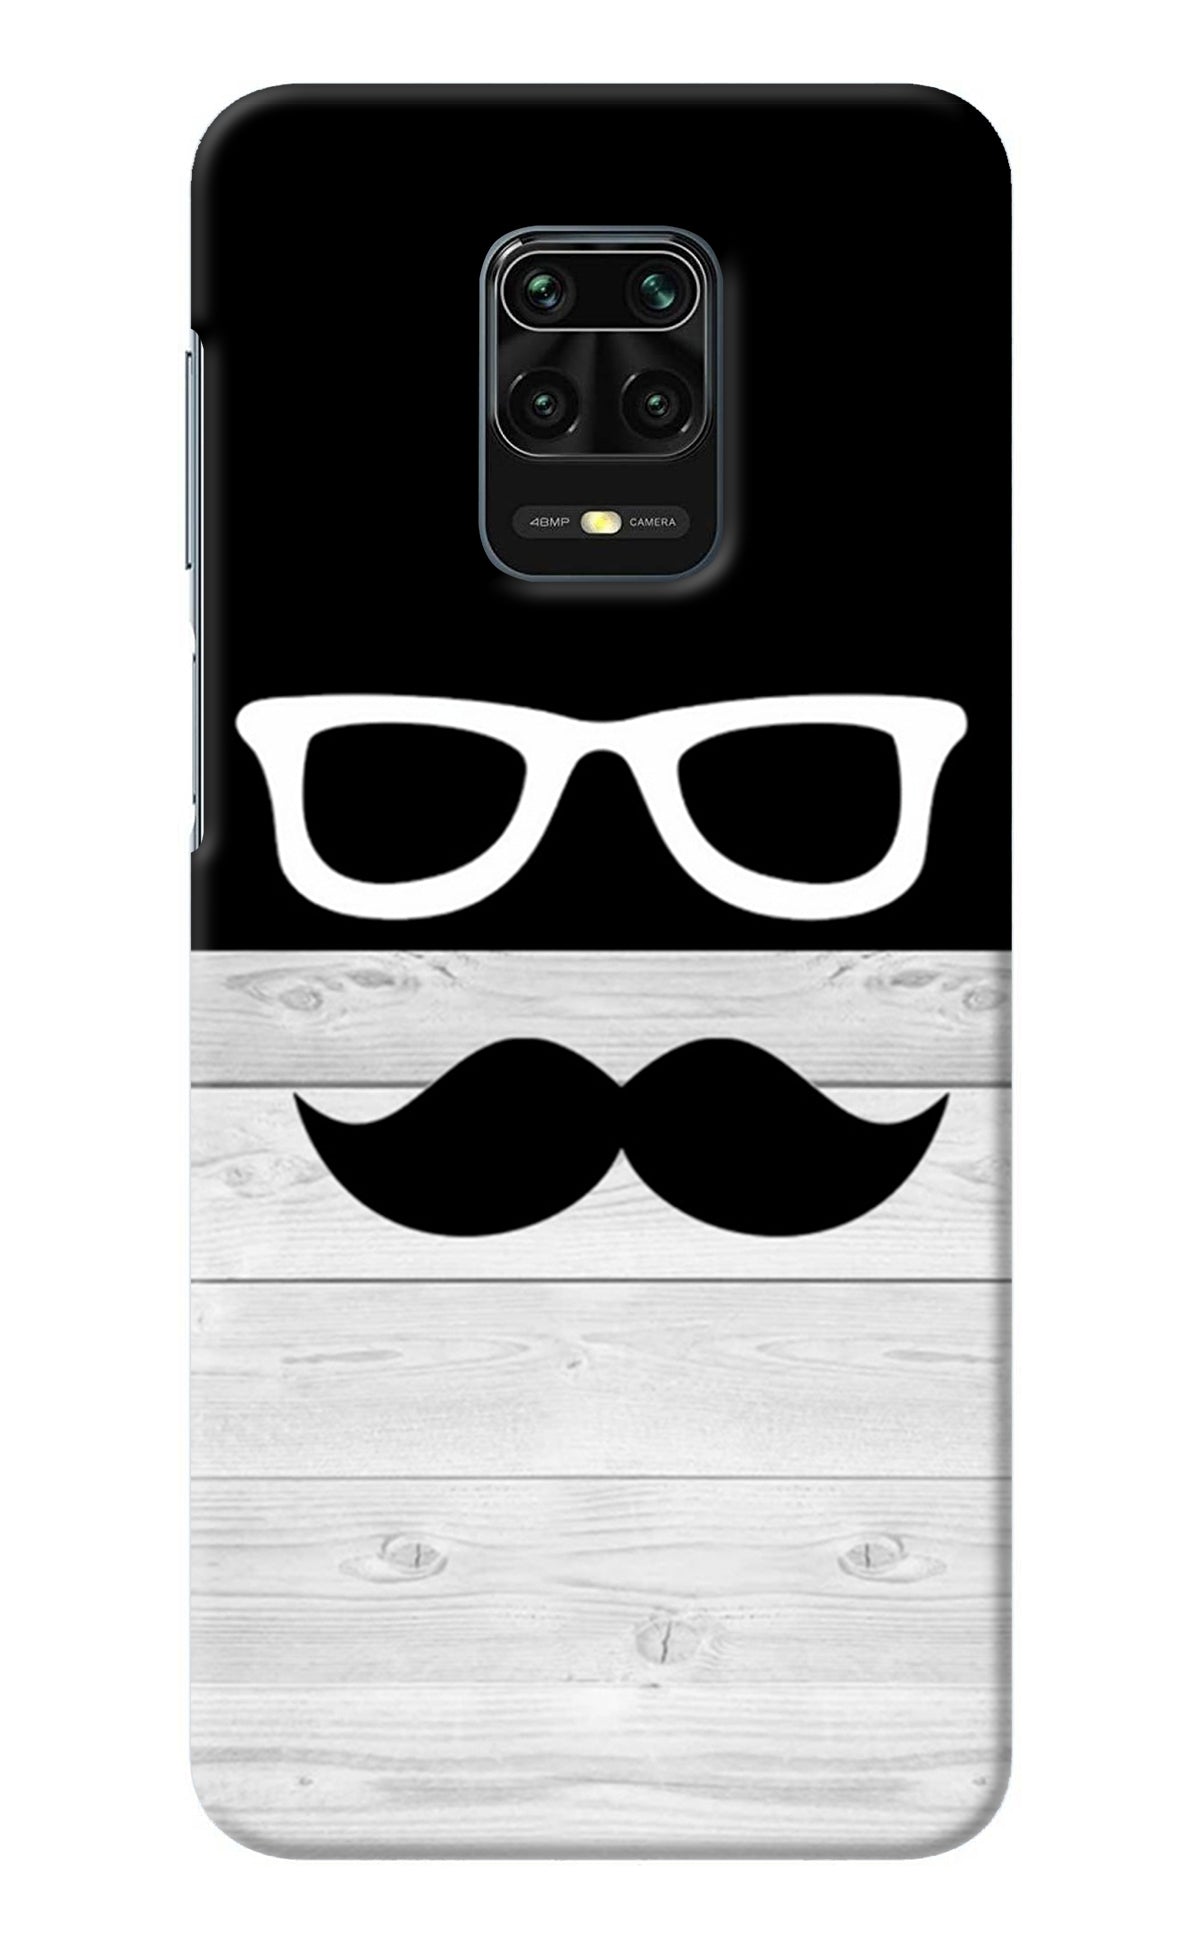 Mustache Redmi Note 9 Pro/Pro Max Back Cover